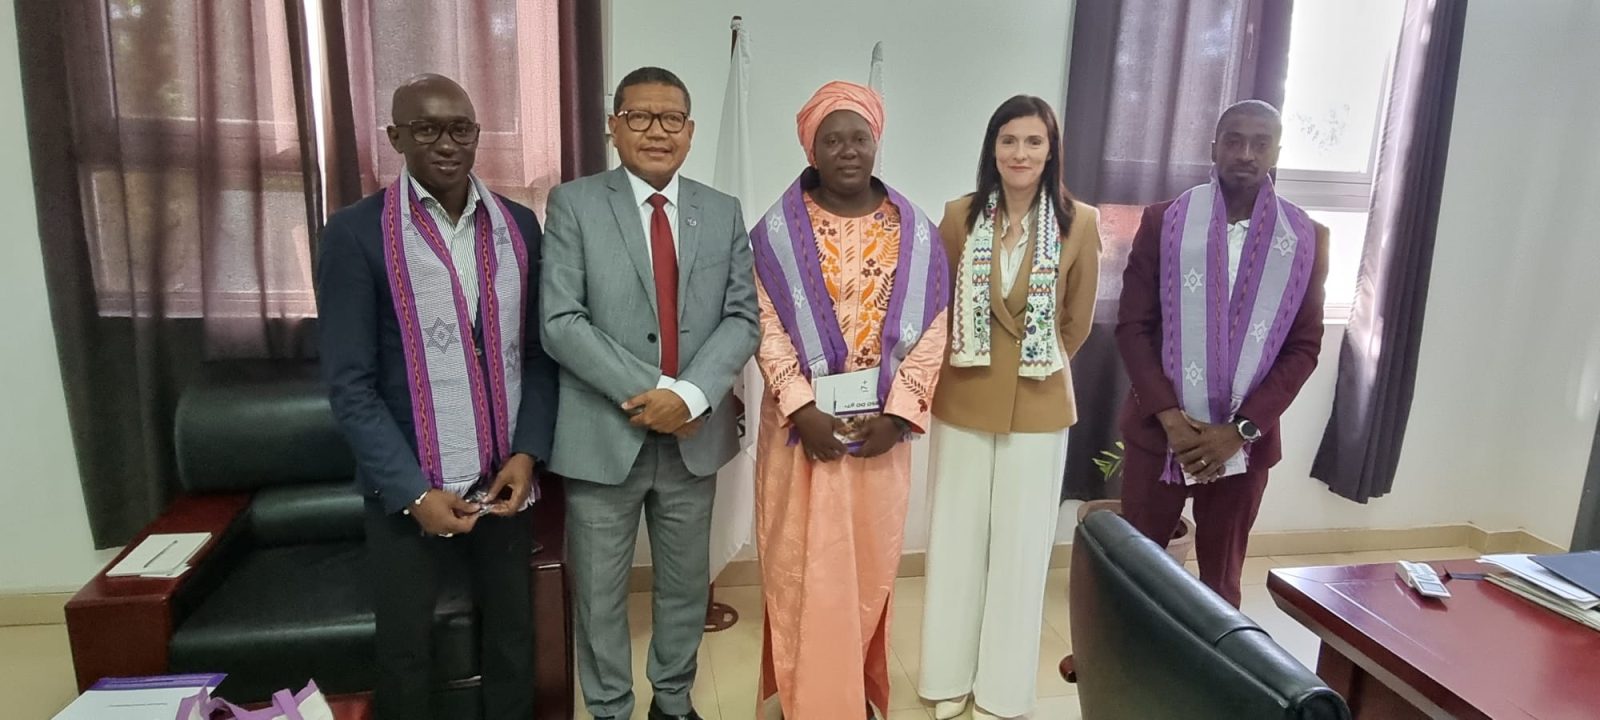 delegation visited Guinea-Bissau